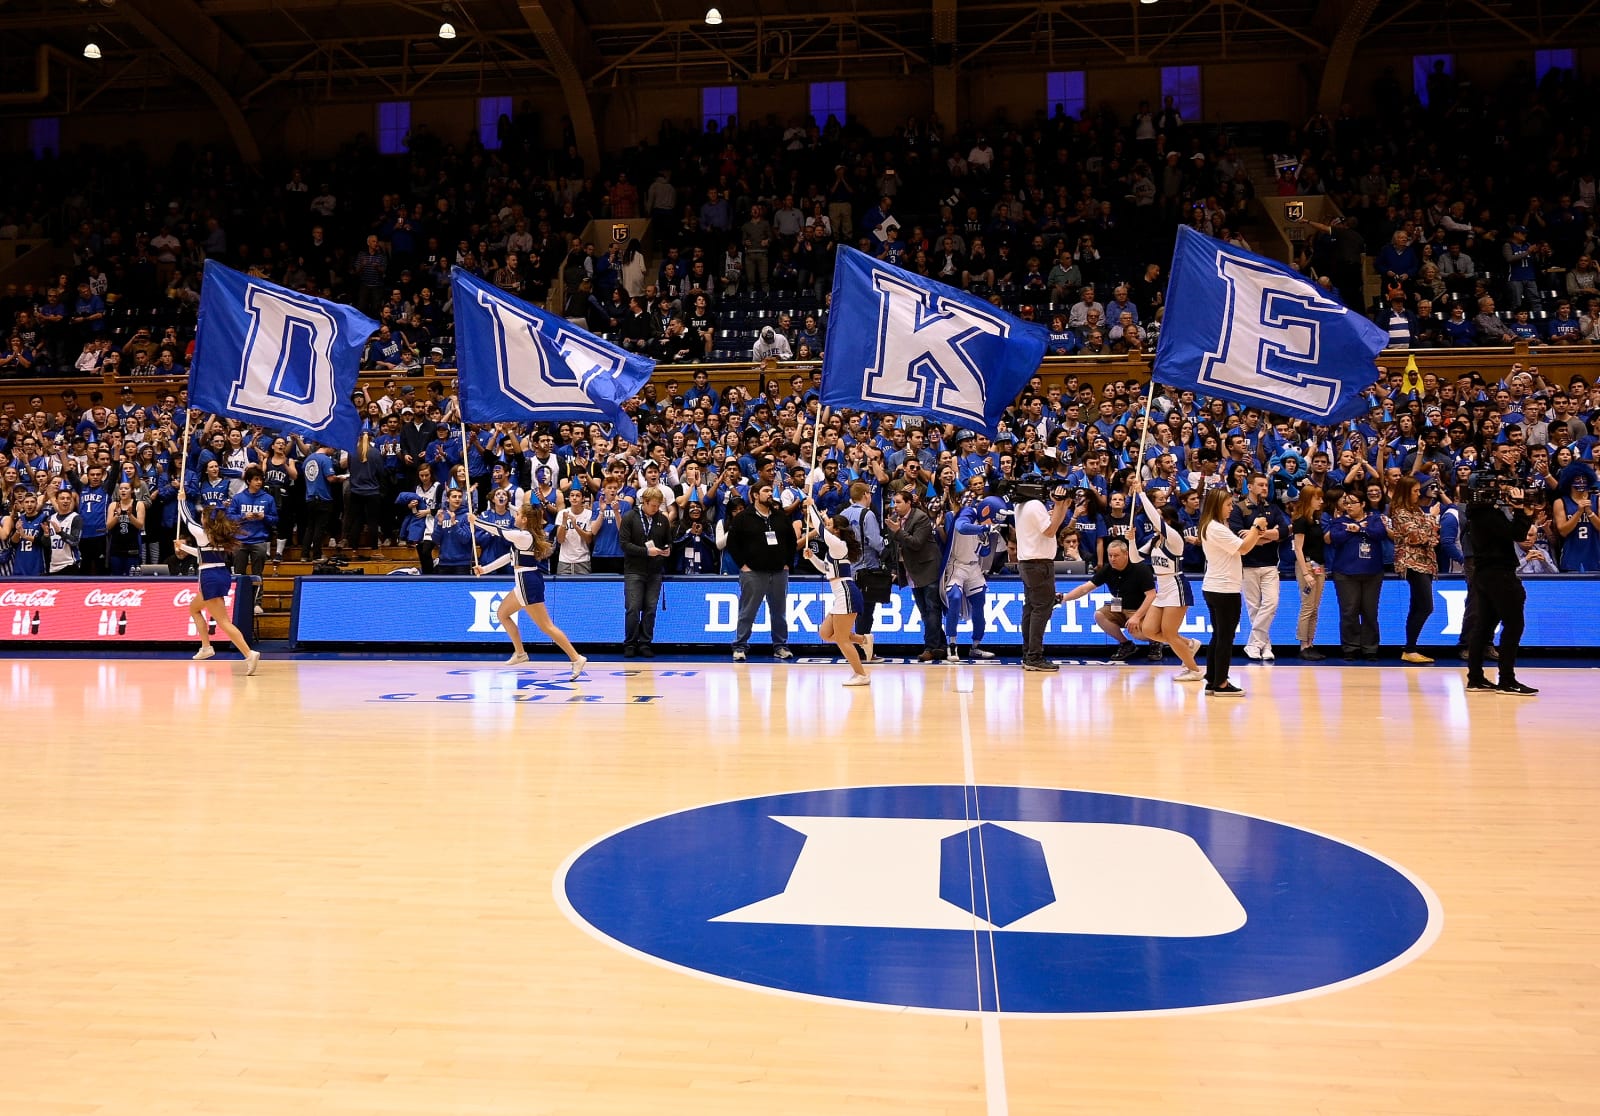 Duke Basketball Background